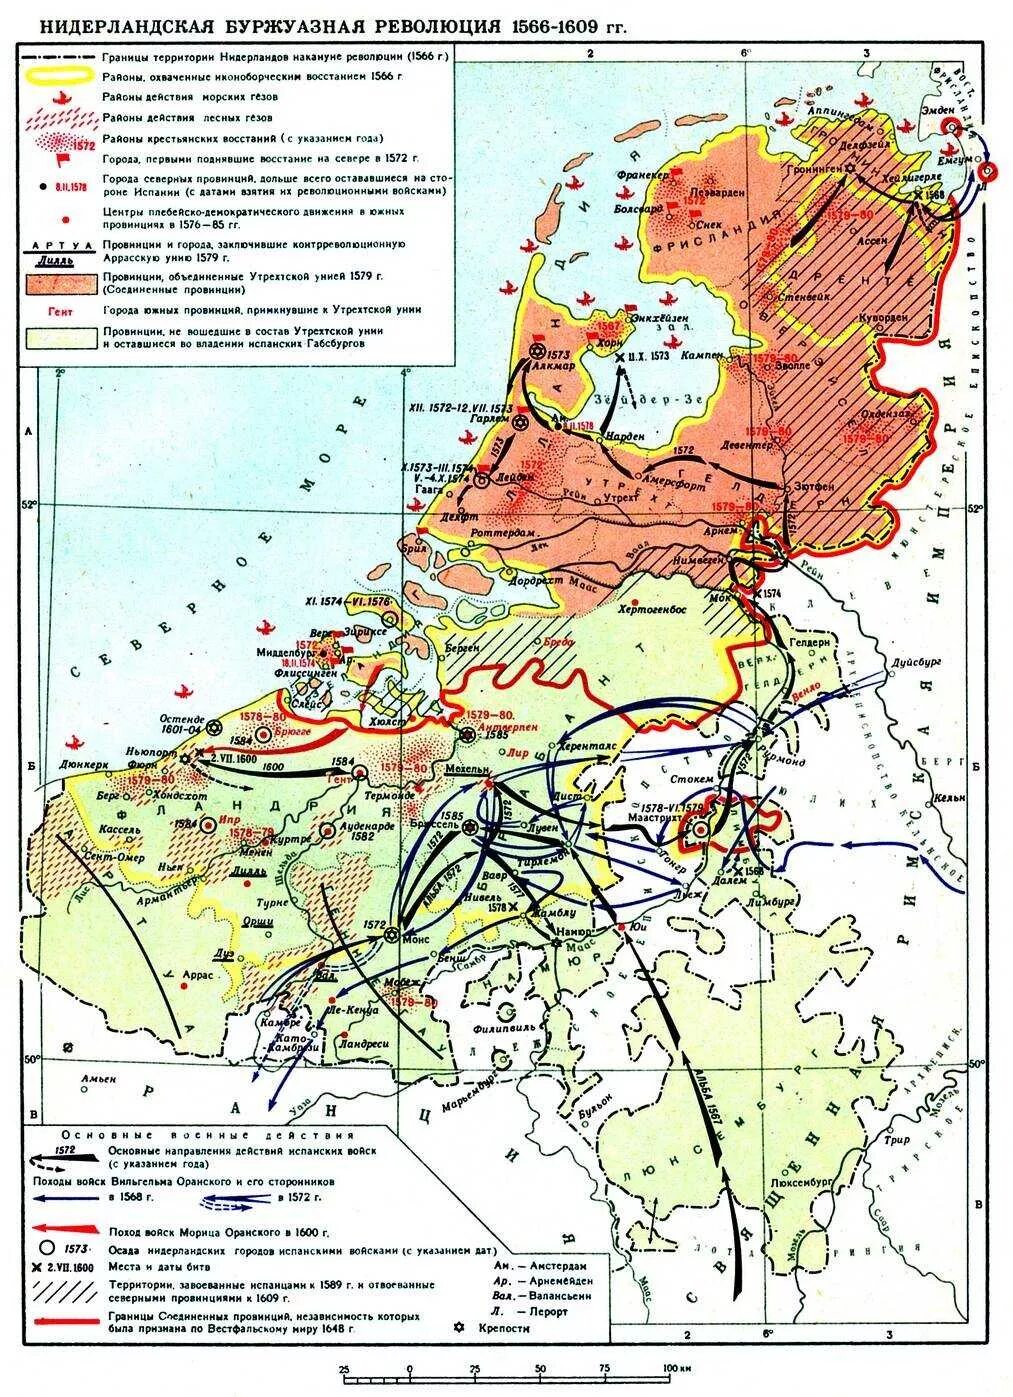 Революция в Голландии 1566-1609. Нидерландская буржуазная революция 1566-1609. Карта Нидерландская буржуазная революция 1566-1609. Нидерландская буржуазная